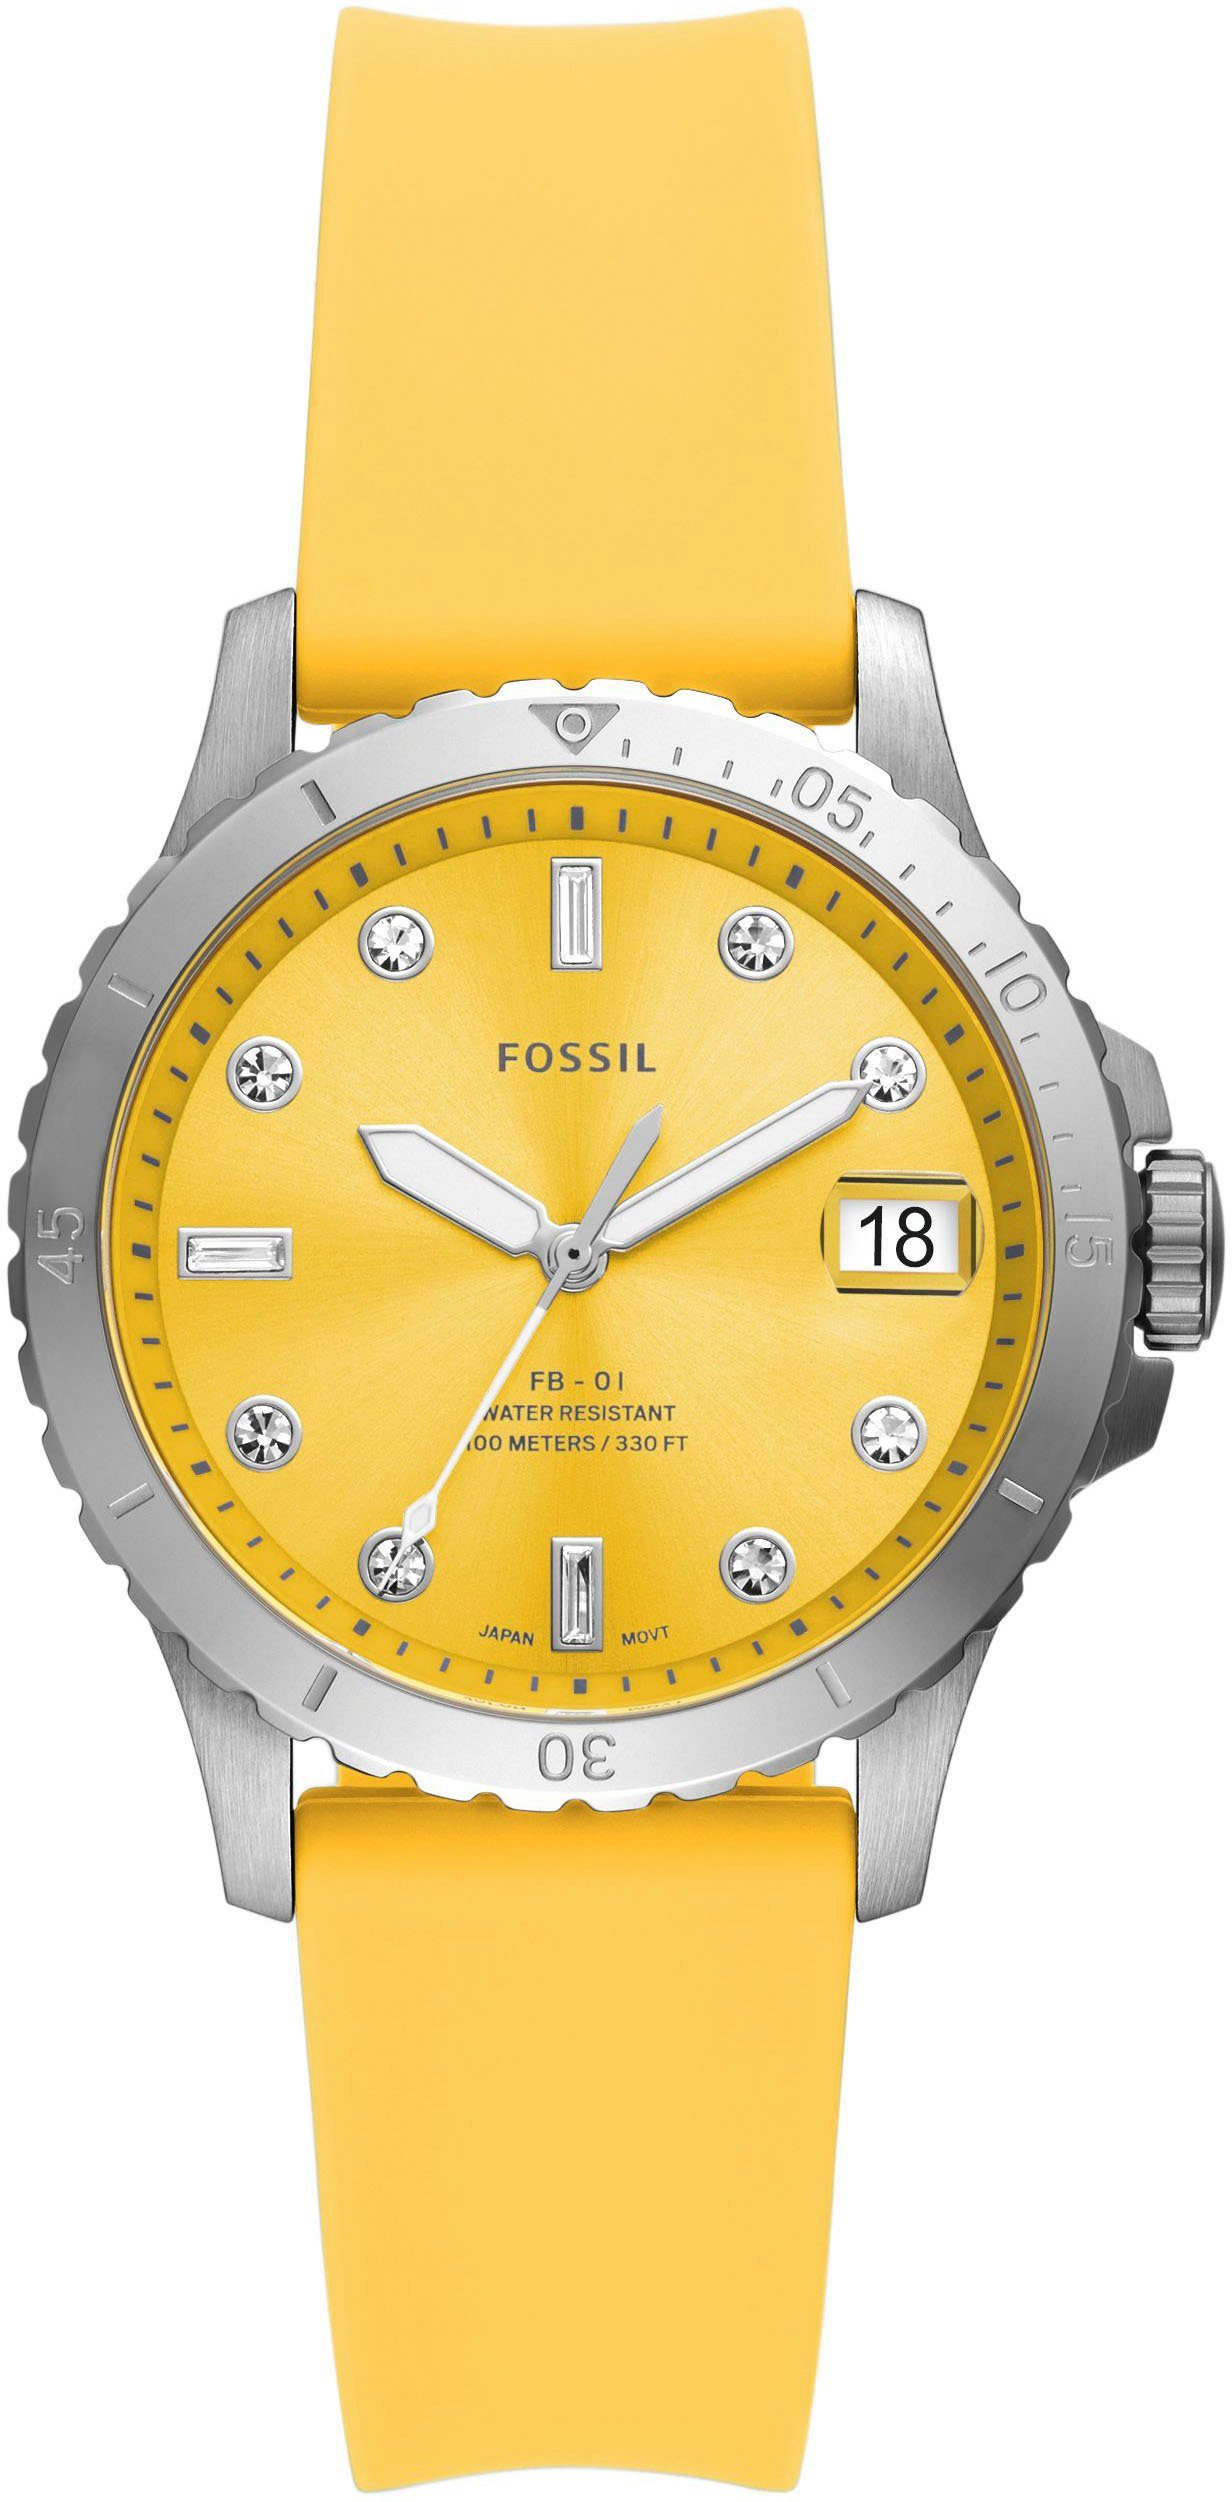 Fossil Quarzuhr FB-01, ES5289, Armbanduhr, Damenuhr, Datum, analog